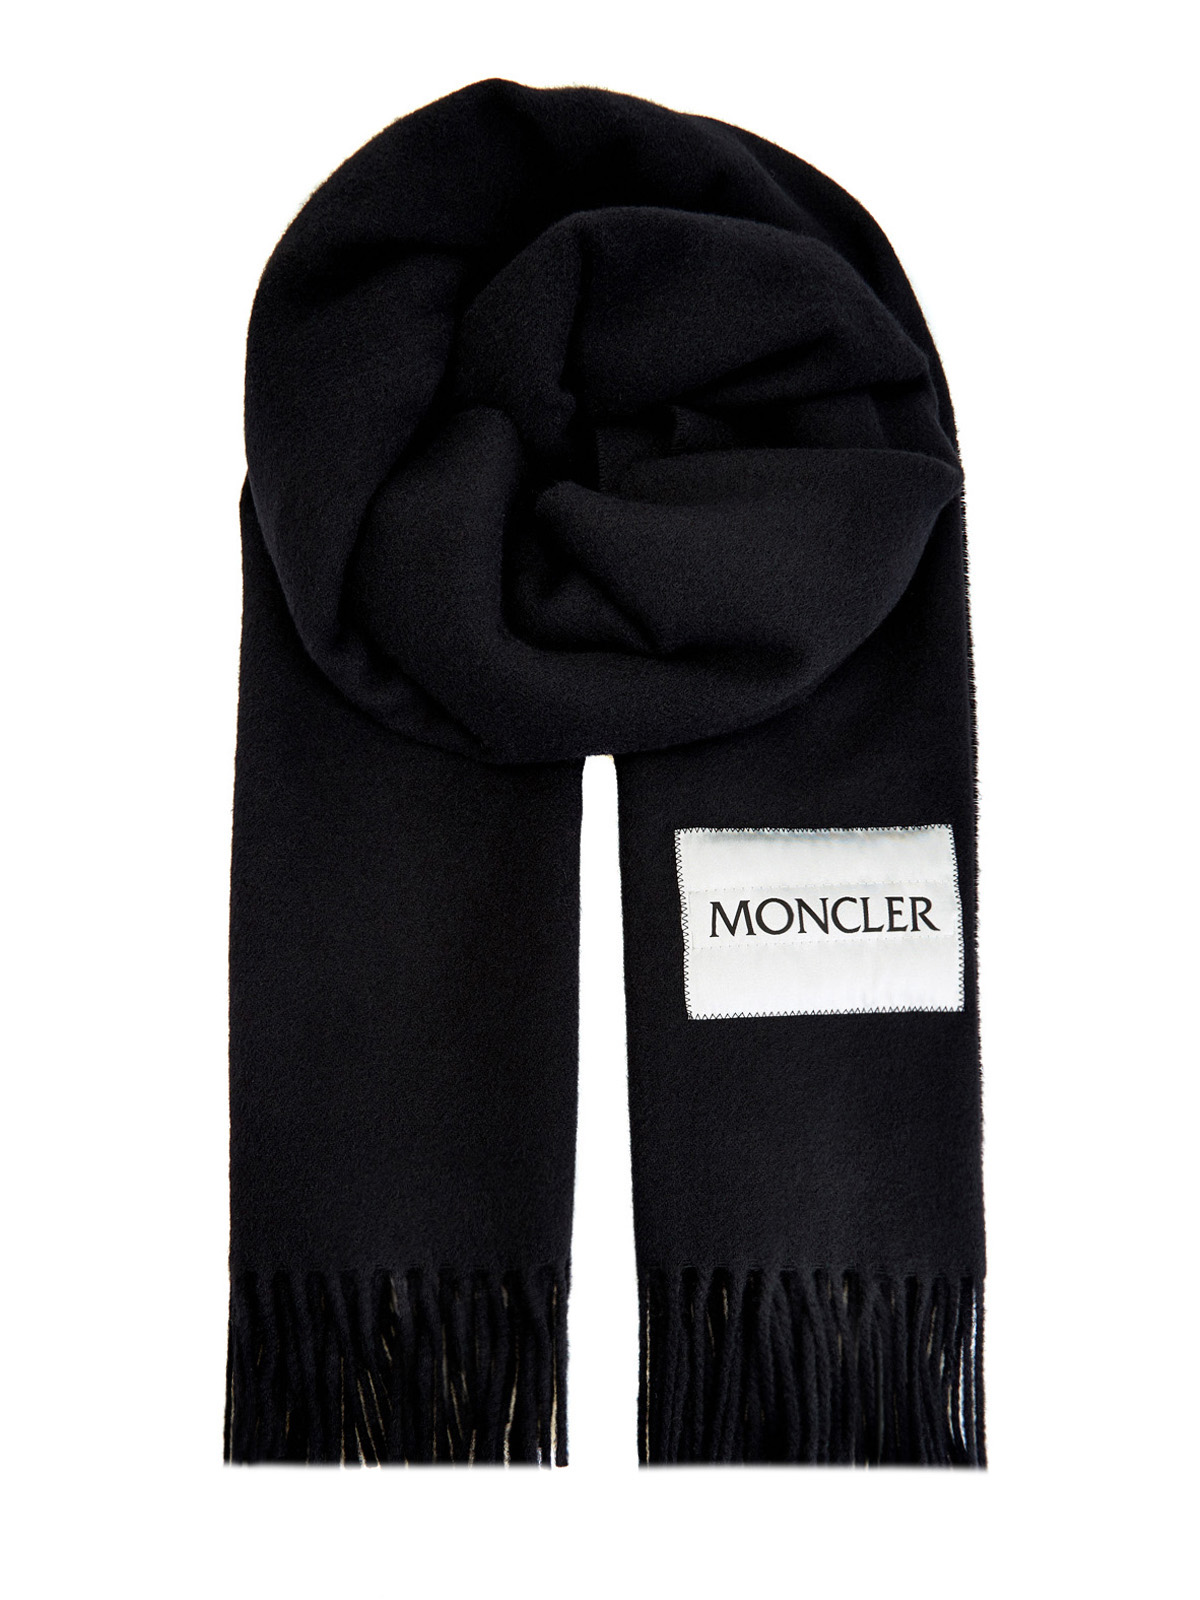 Однотонный шарф с эмблемой в технике жаккард MONCLER, цвет черный, размер 36;36.5;37.5;38;38.5;39;40 - фото 1